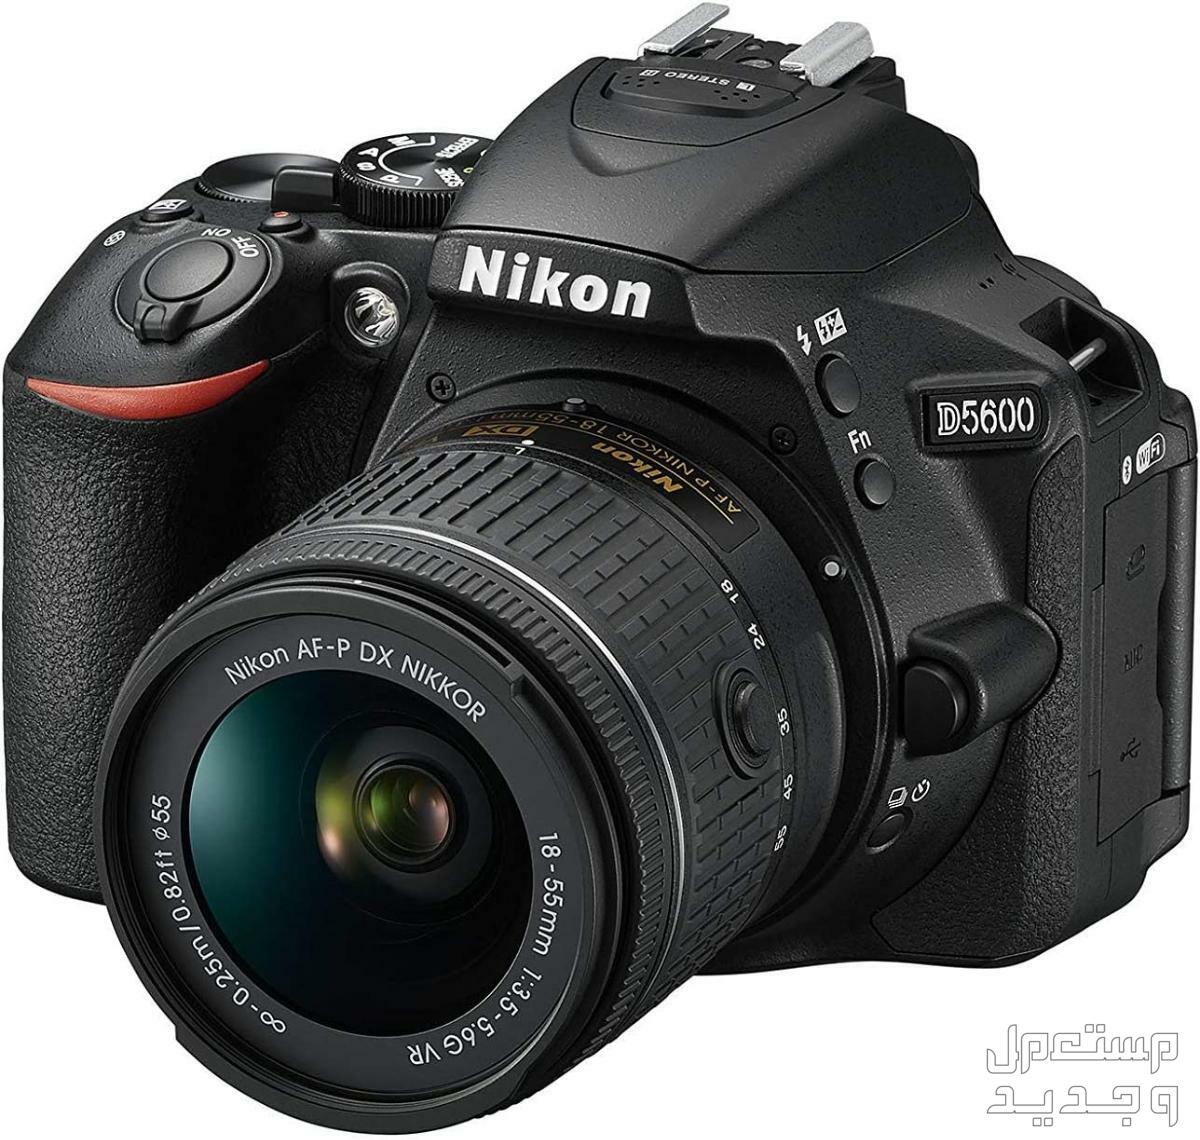 10 كاميرات تصوير ماركات عالمية بأسعار رخيصة في السودان كاميرا Nikon D5600